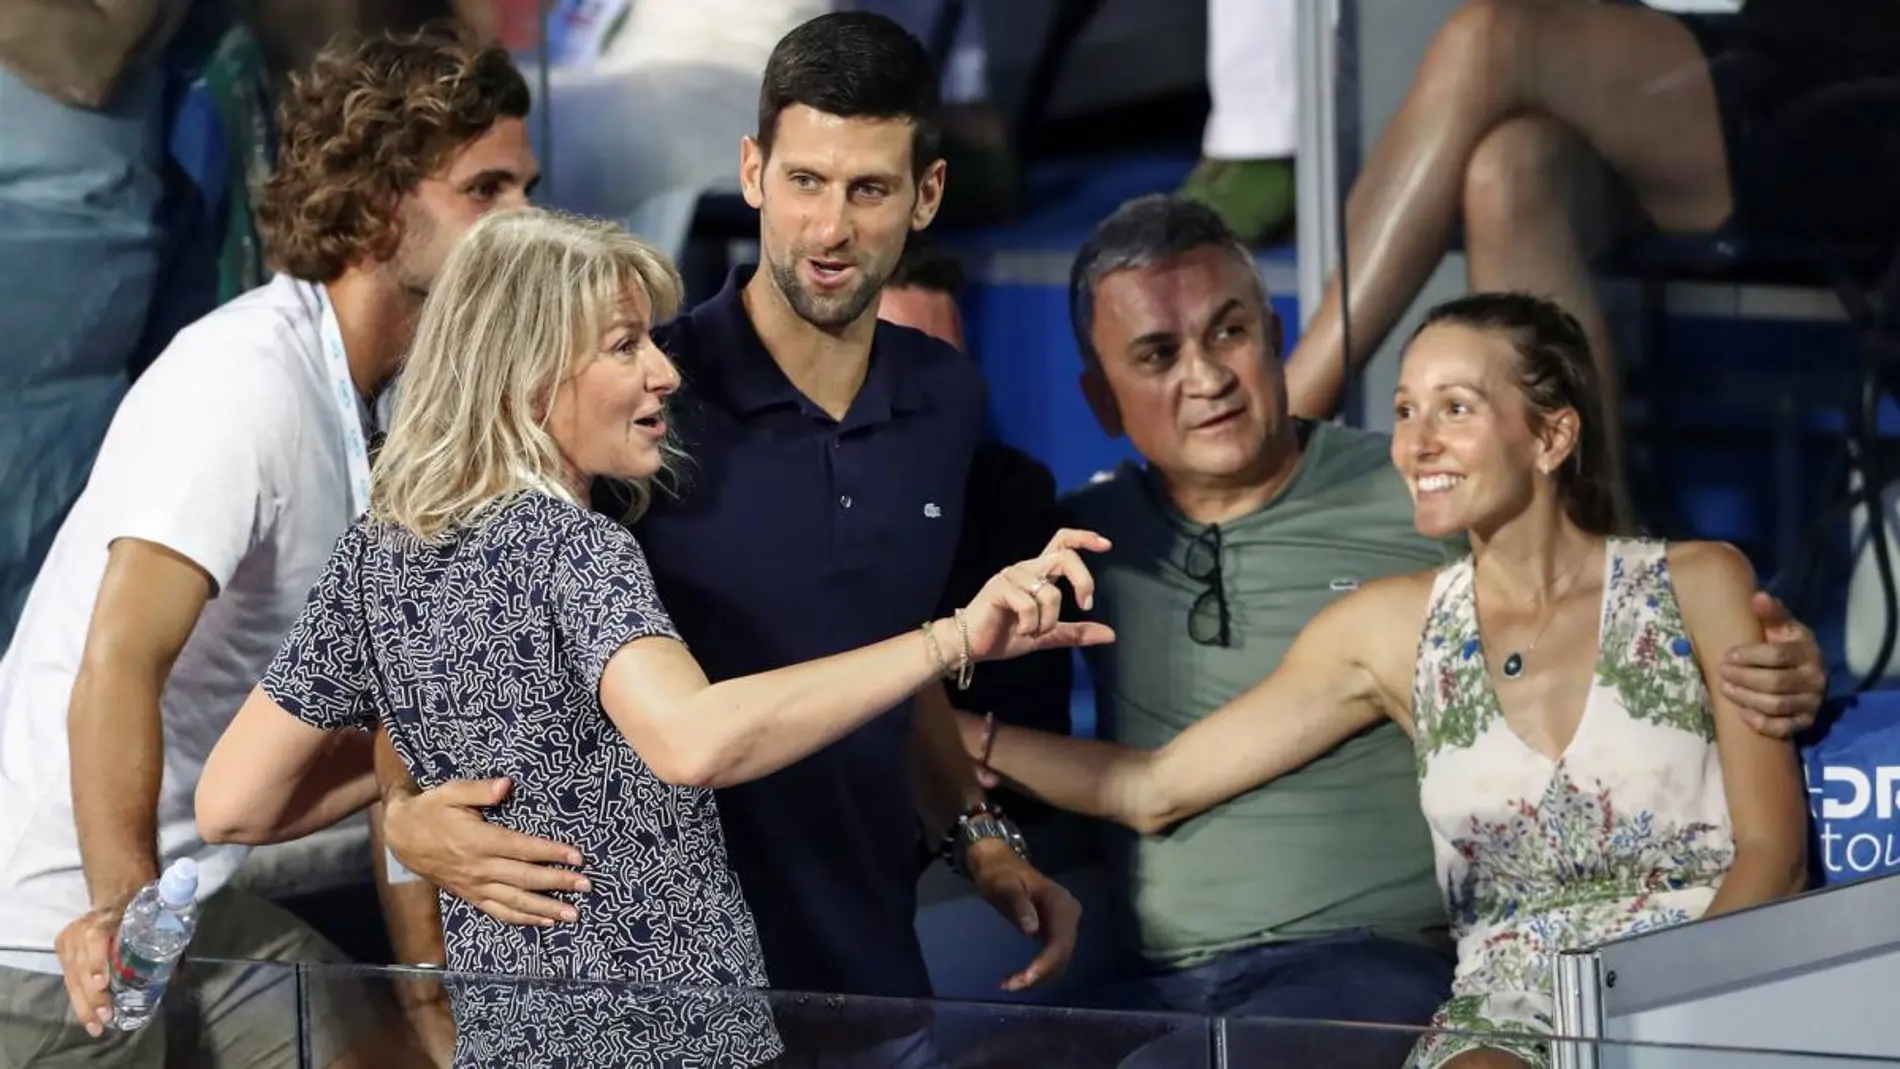 La familia Djokovic al completo en el Adria Tour